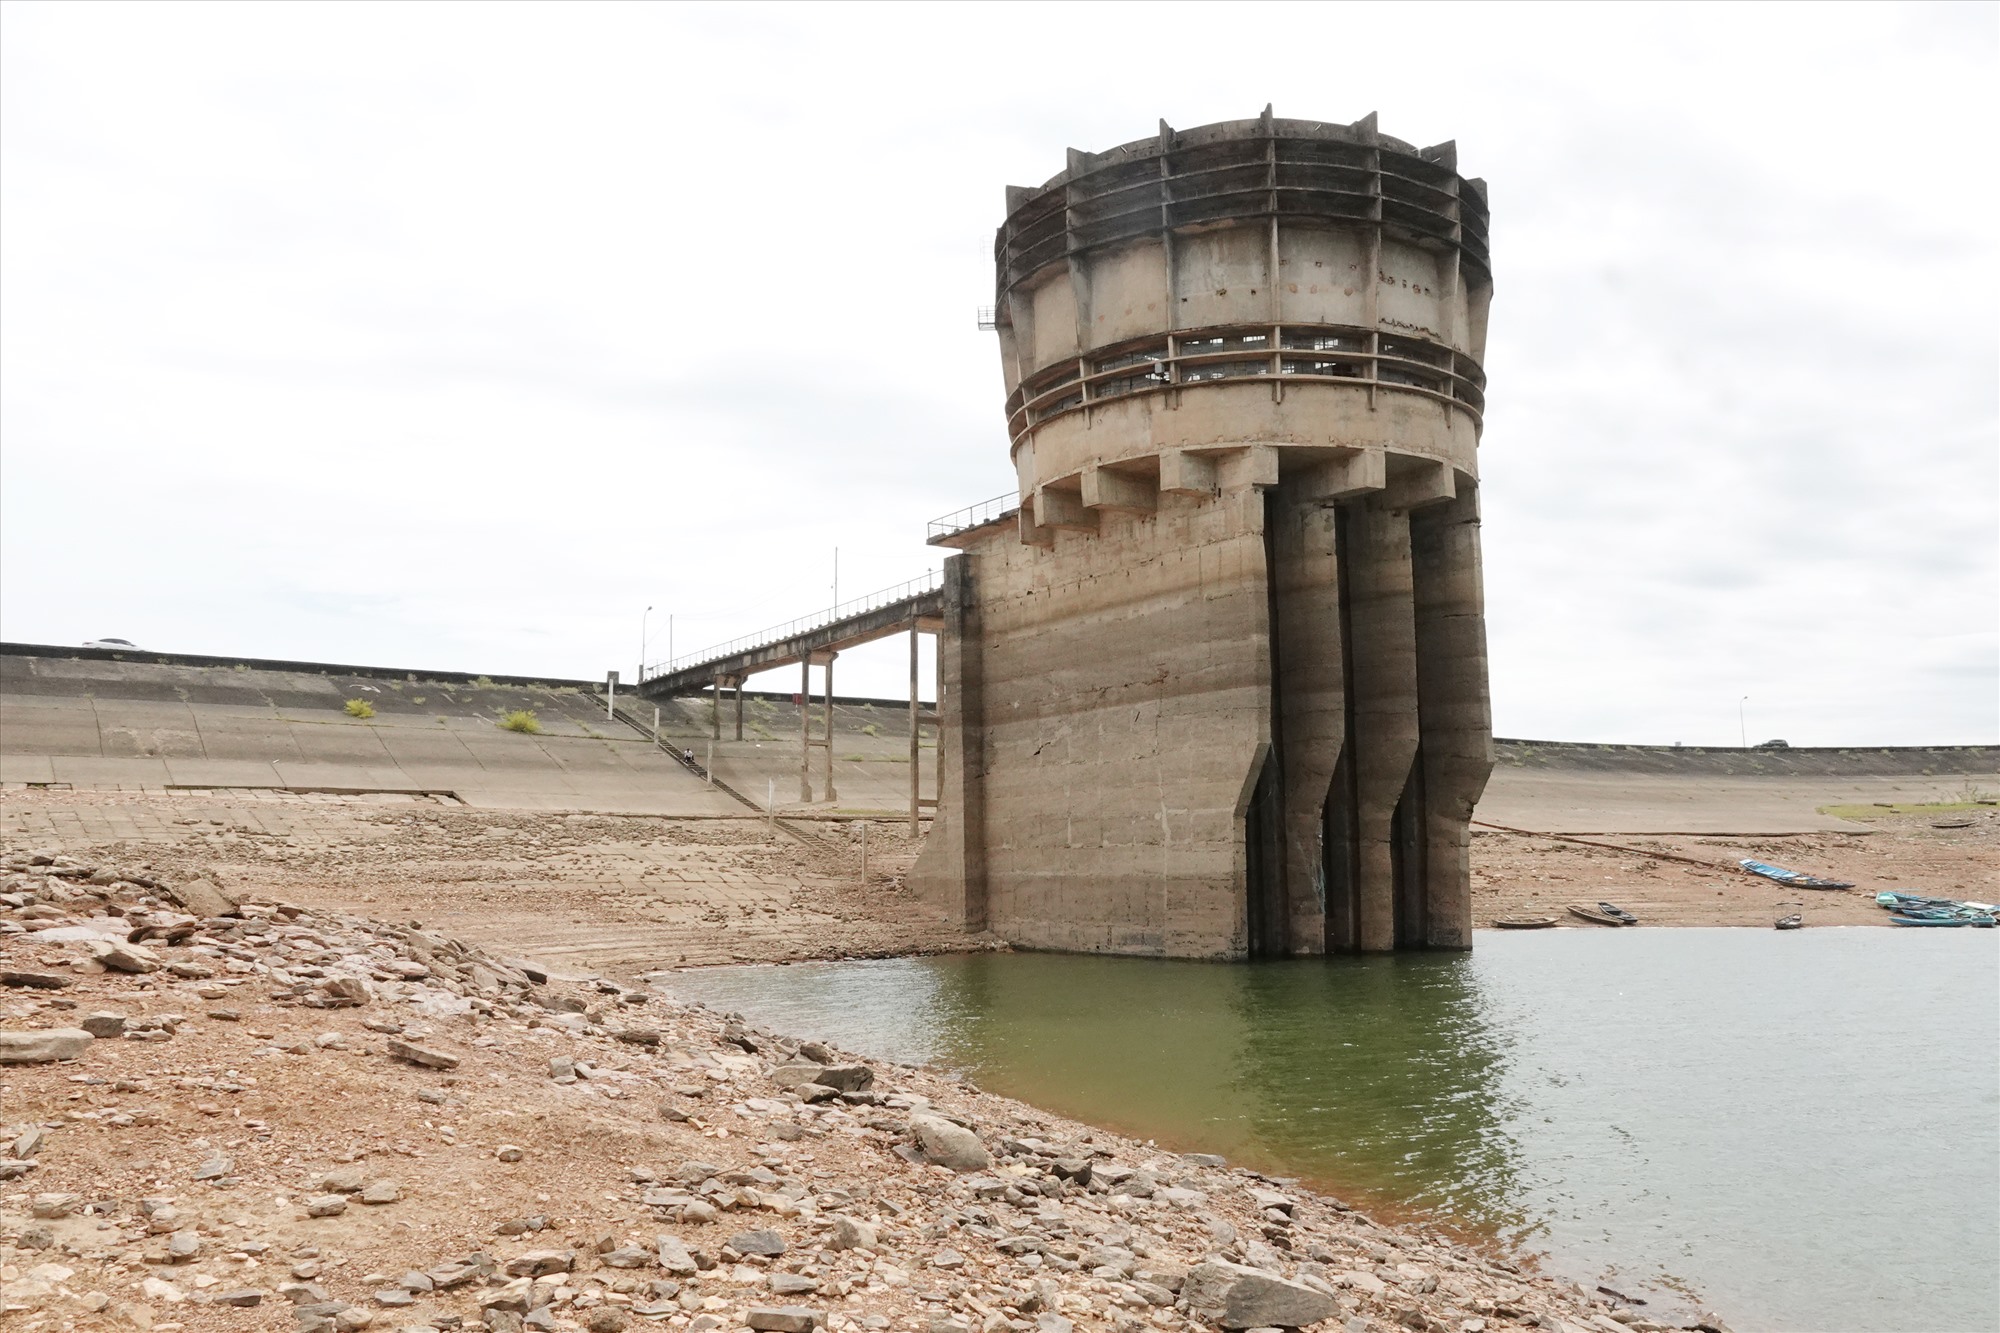 Mực nước xuống thấp đã ảnh hưởng đến thiếu nguồn nước thô đề cấp nước cho Nhà máy nước sạch Bắc Cẩm Xuyên. Ảnh: Trần Tuấn.